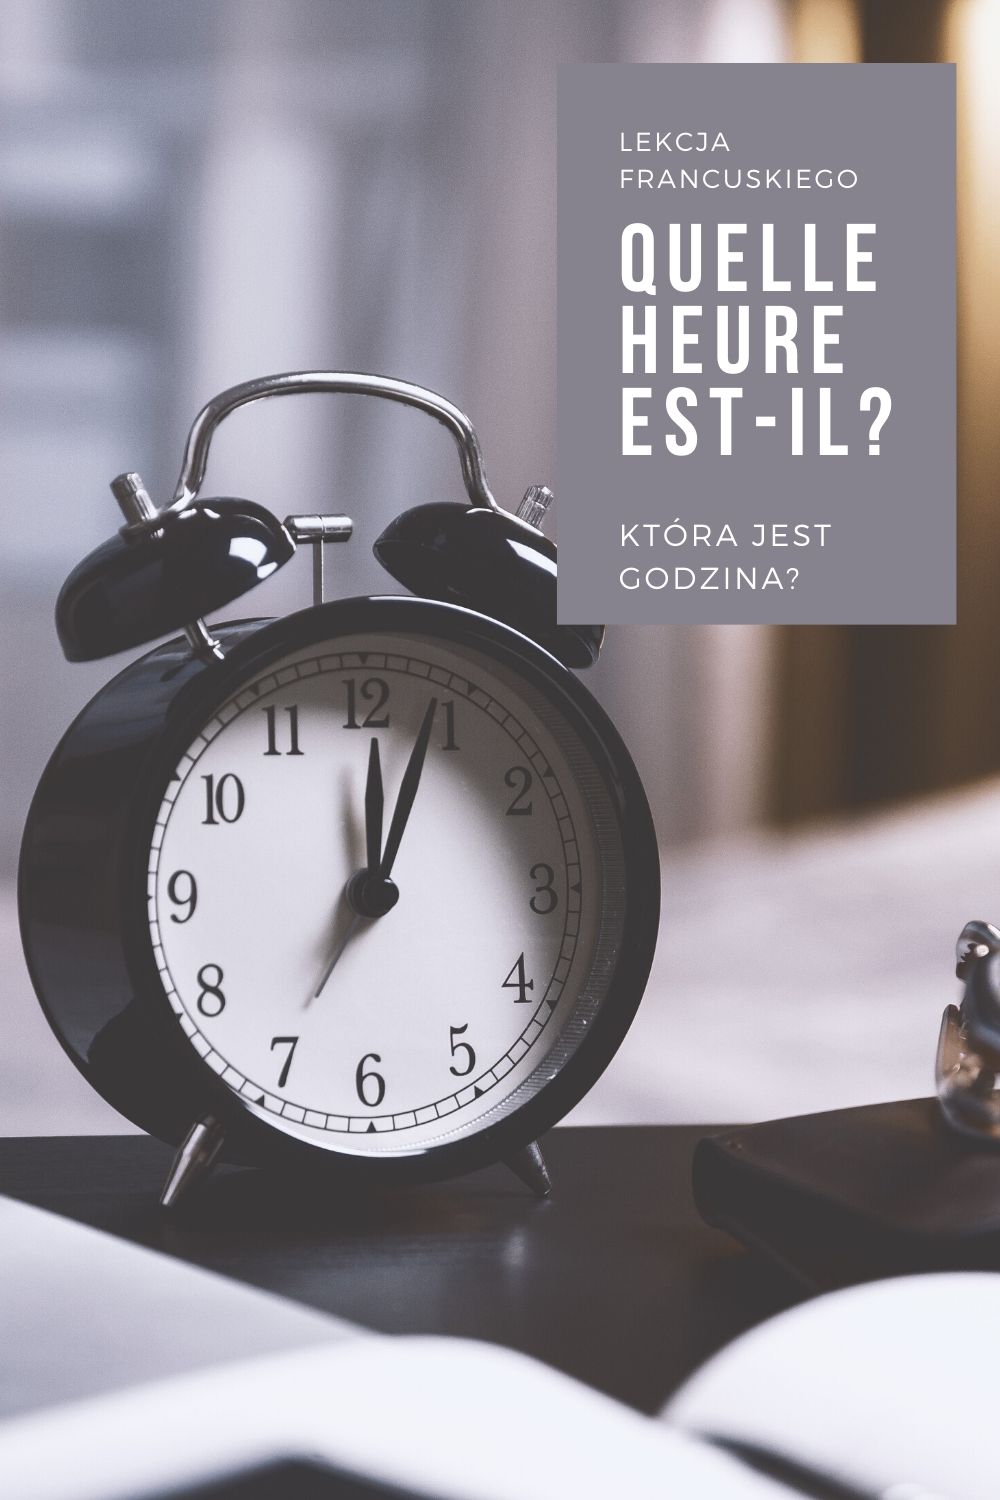 Lekcja Francuskiego: Która Jest Godzina?